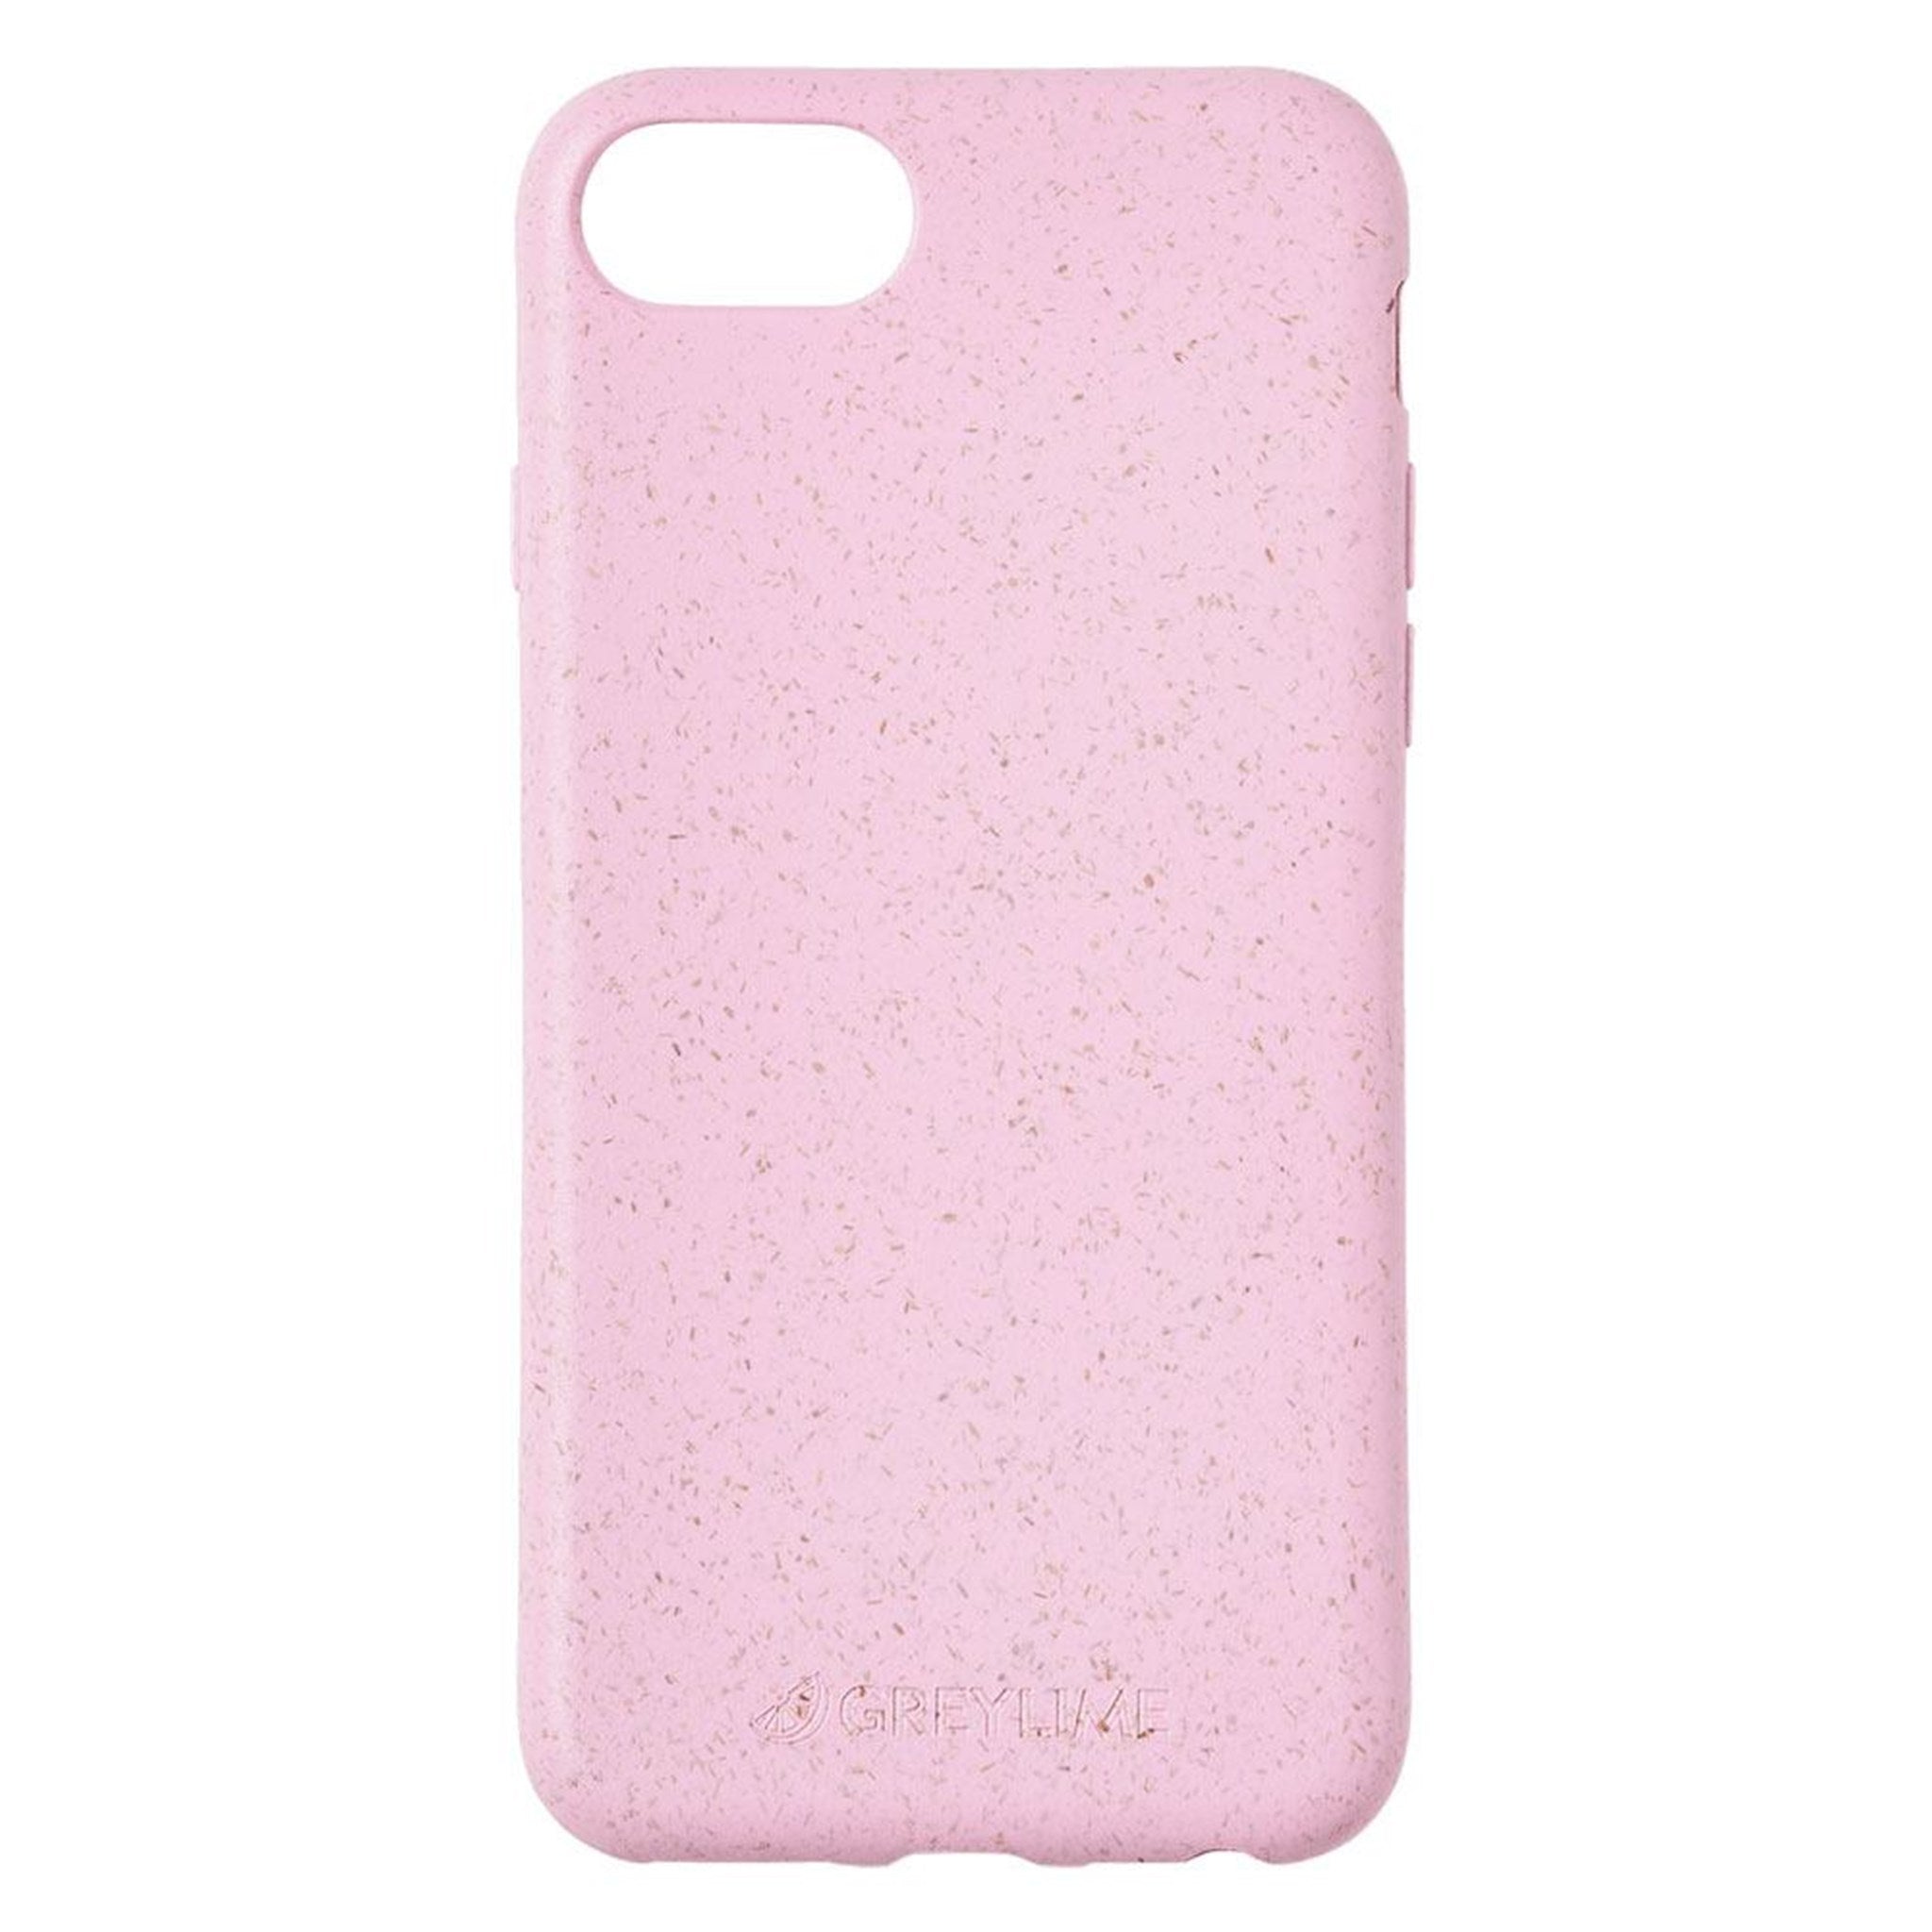 Billede af GreyLime iPhone 6/7/8/SE Miljøvenligt Cover Pink hos GreyLime